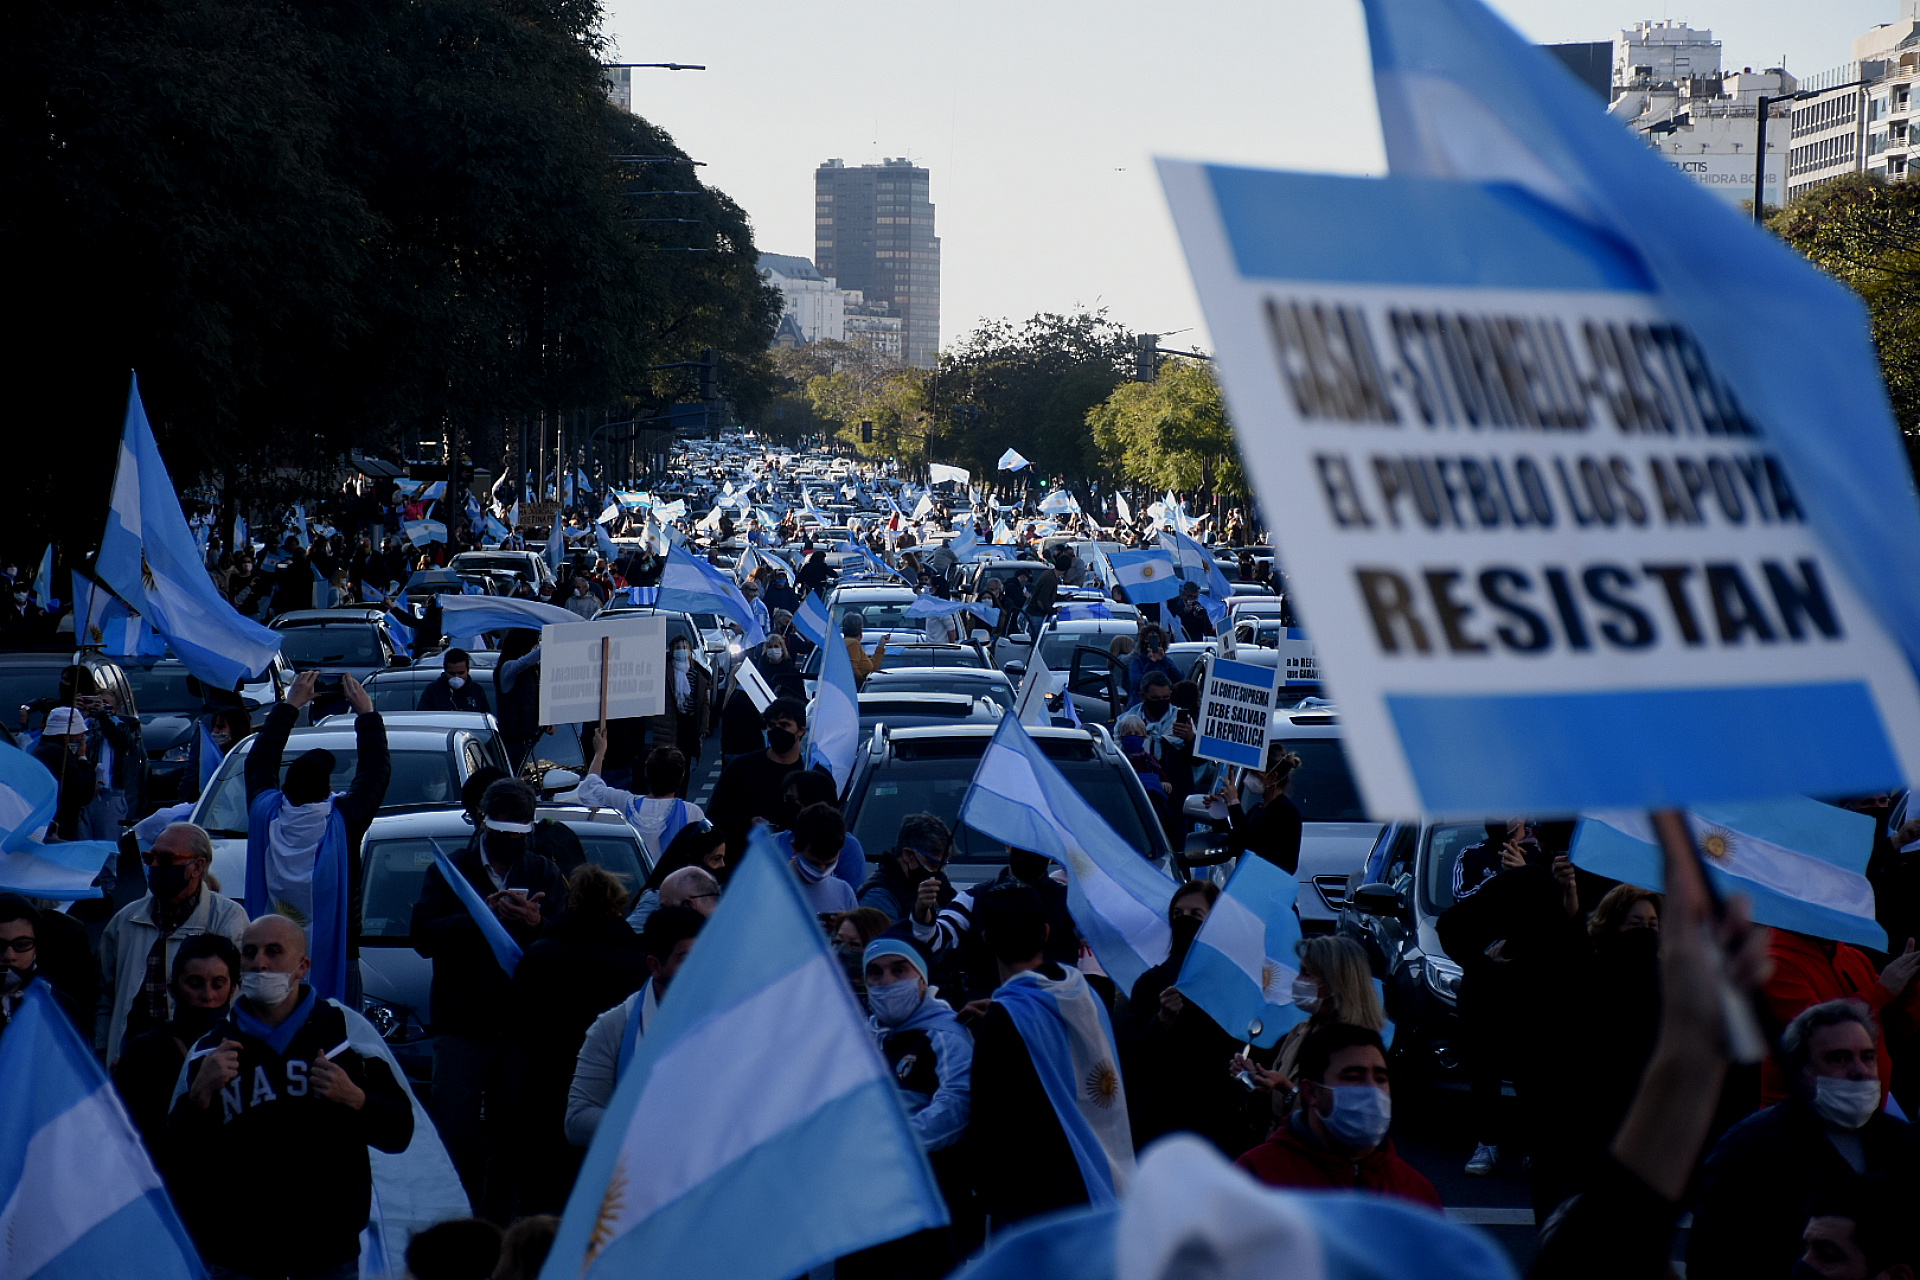 La marcha fue multitudinaria y se realizó en los centros urbanos más importantes del país (Nicolás Stulberg)